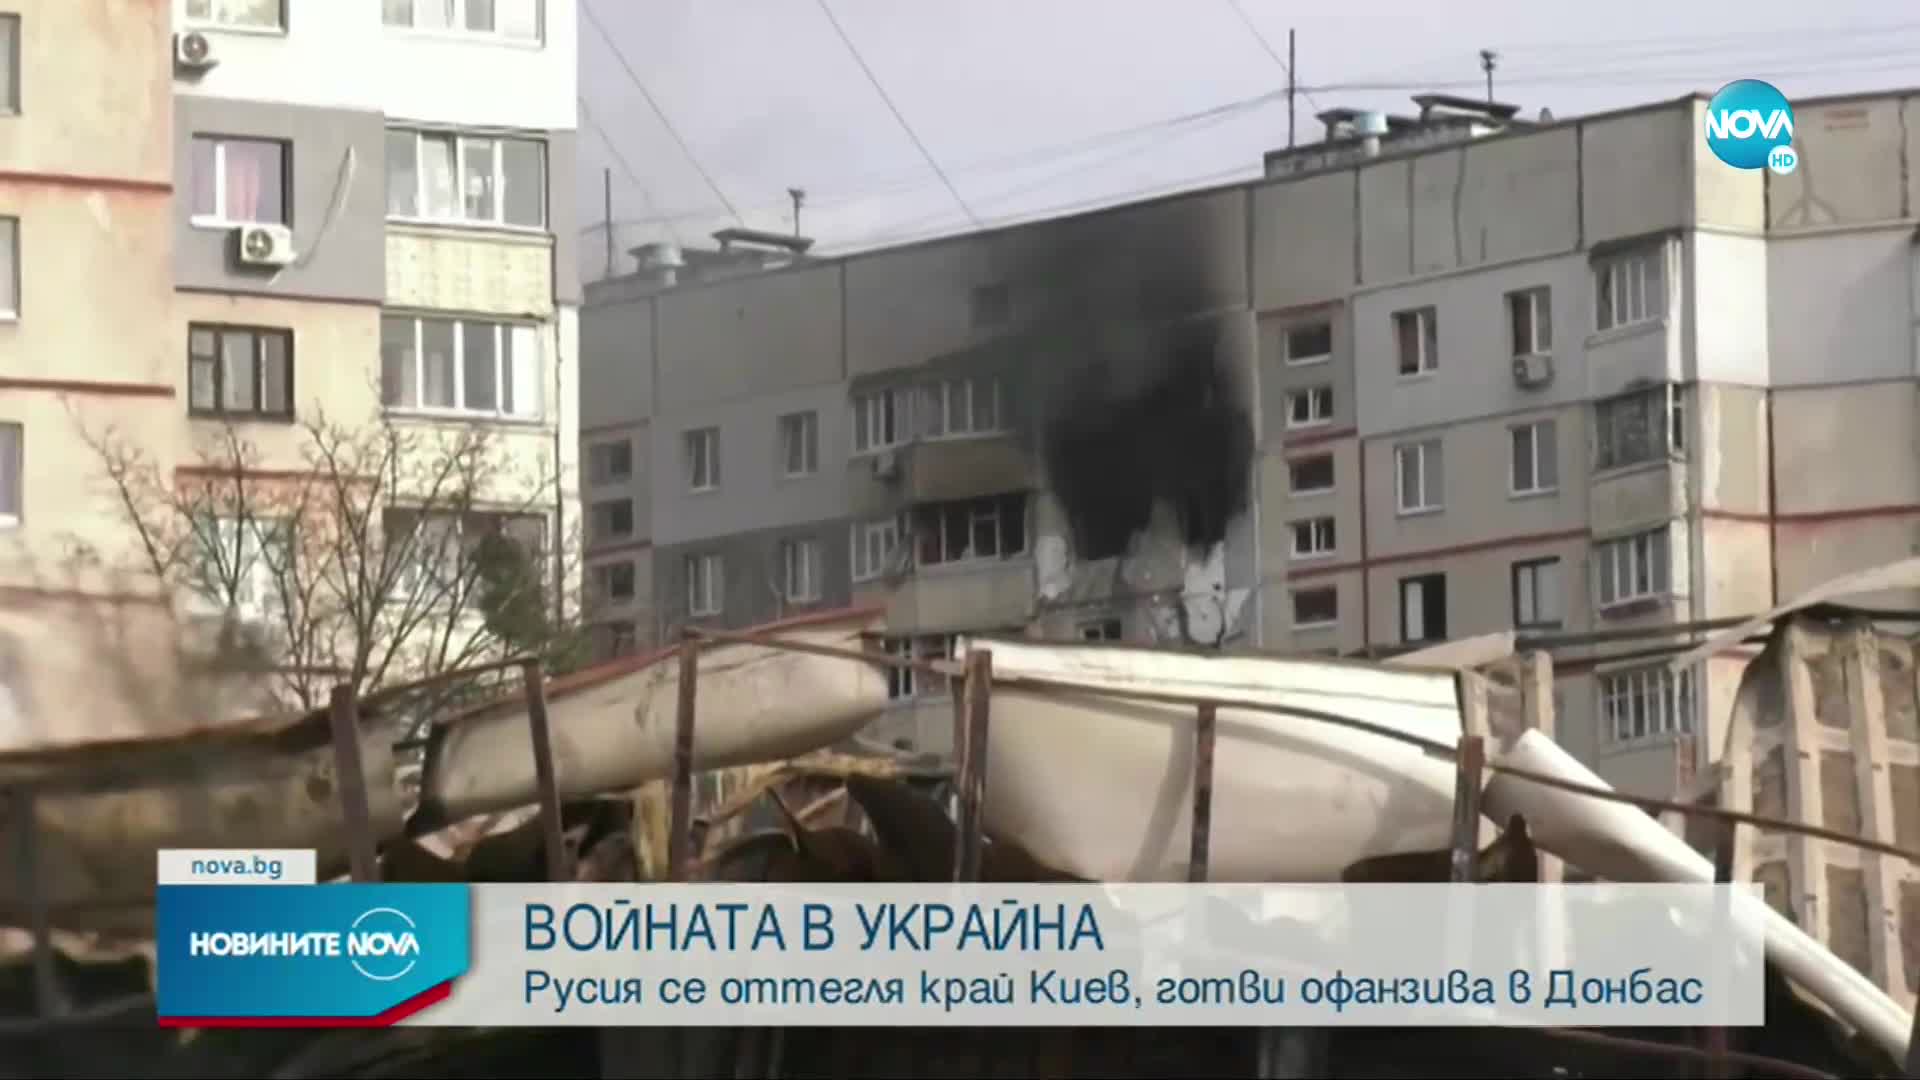 ВОЙНАТА В УКРАЙНА: Русия се оттегля край Киев, готви офанзива в Донбас